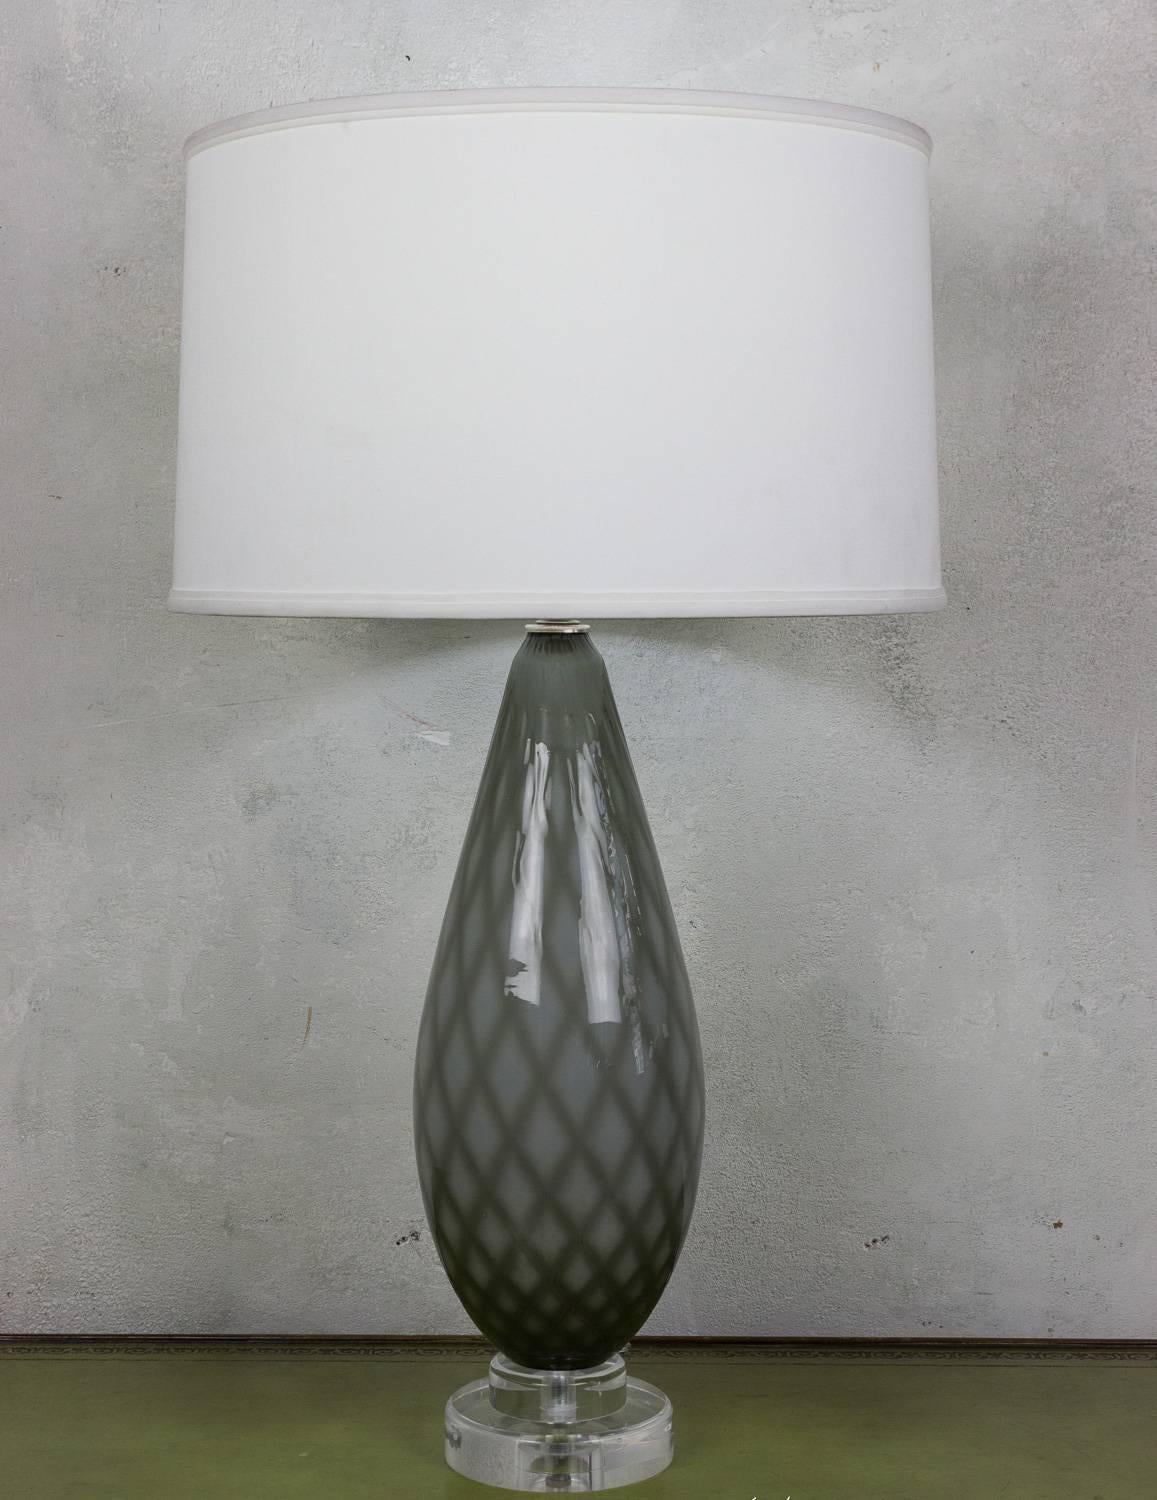 Cette paire captivante de lampes de table provient d'Italie et date des années 1950. Les lampes présentent un remarquable motif de diamants dans un design en verre coulé, incorporant des teintes de vert grisâtre et de blanc. Cette combinaison